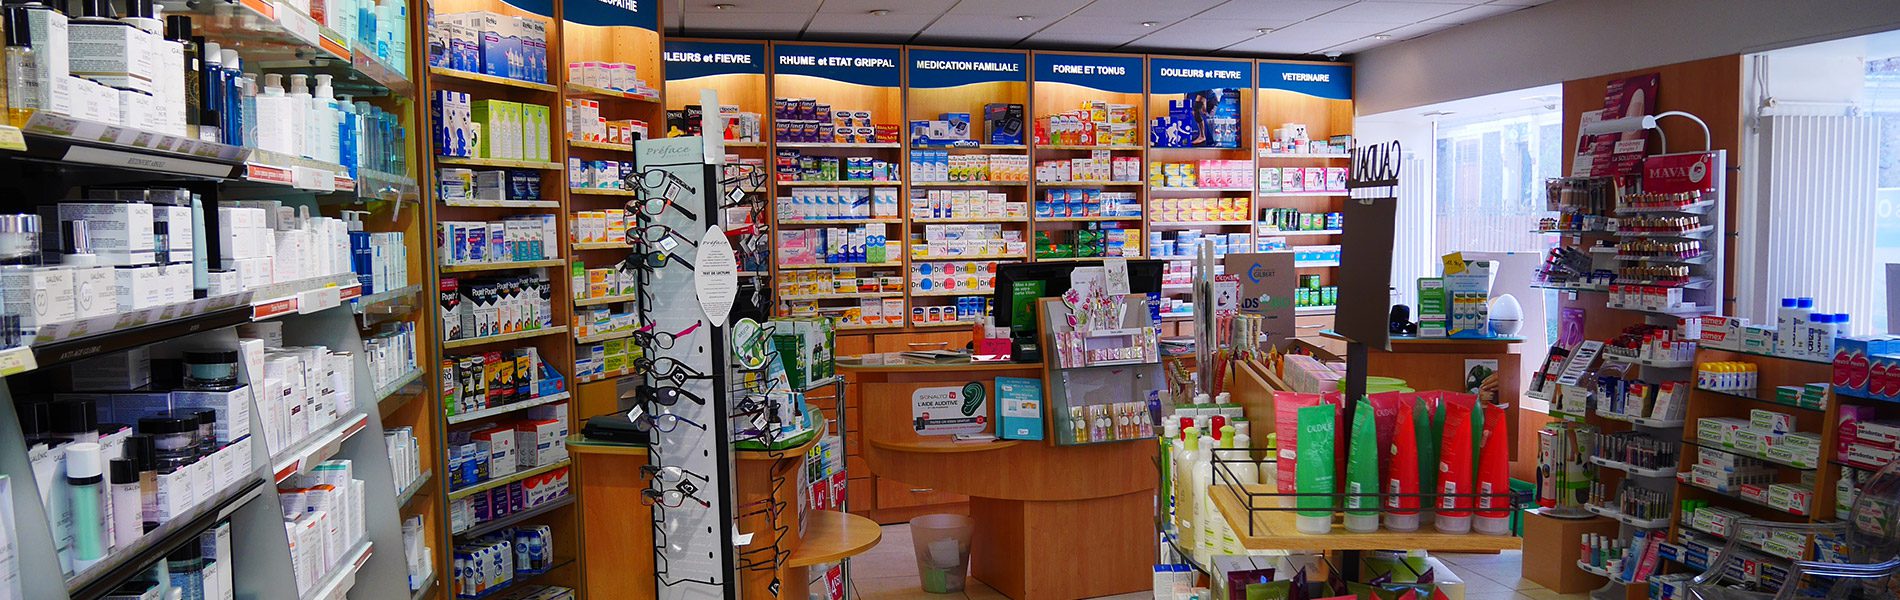 Pharmacie DU LAVOIR - Image Homepage 2